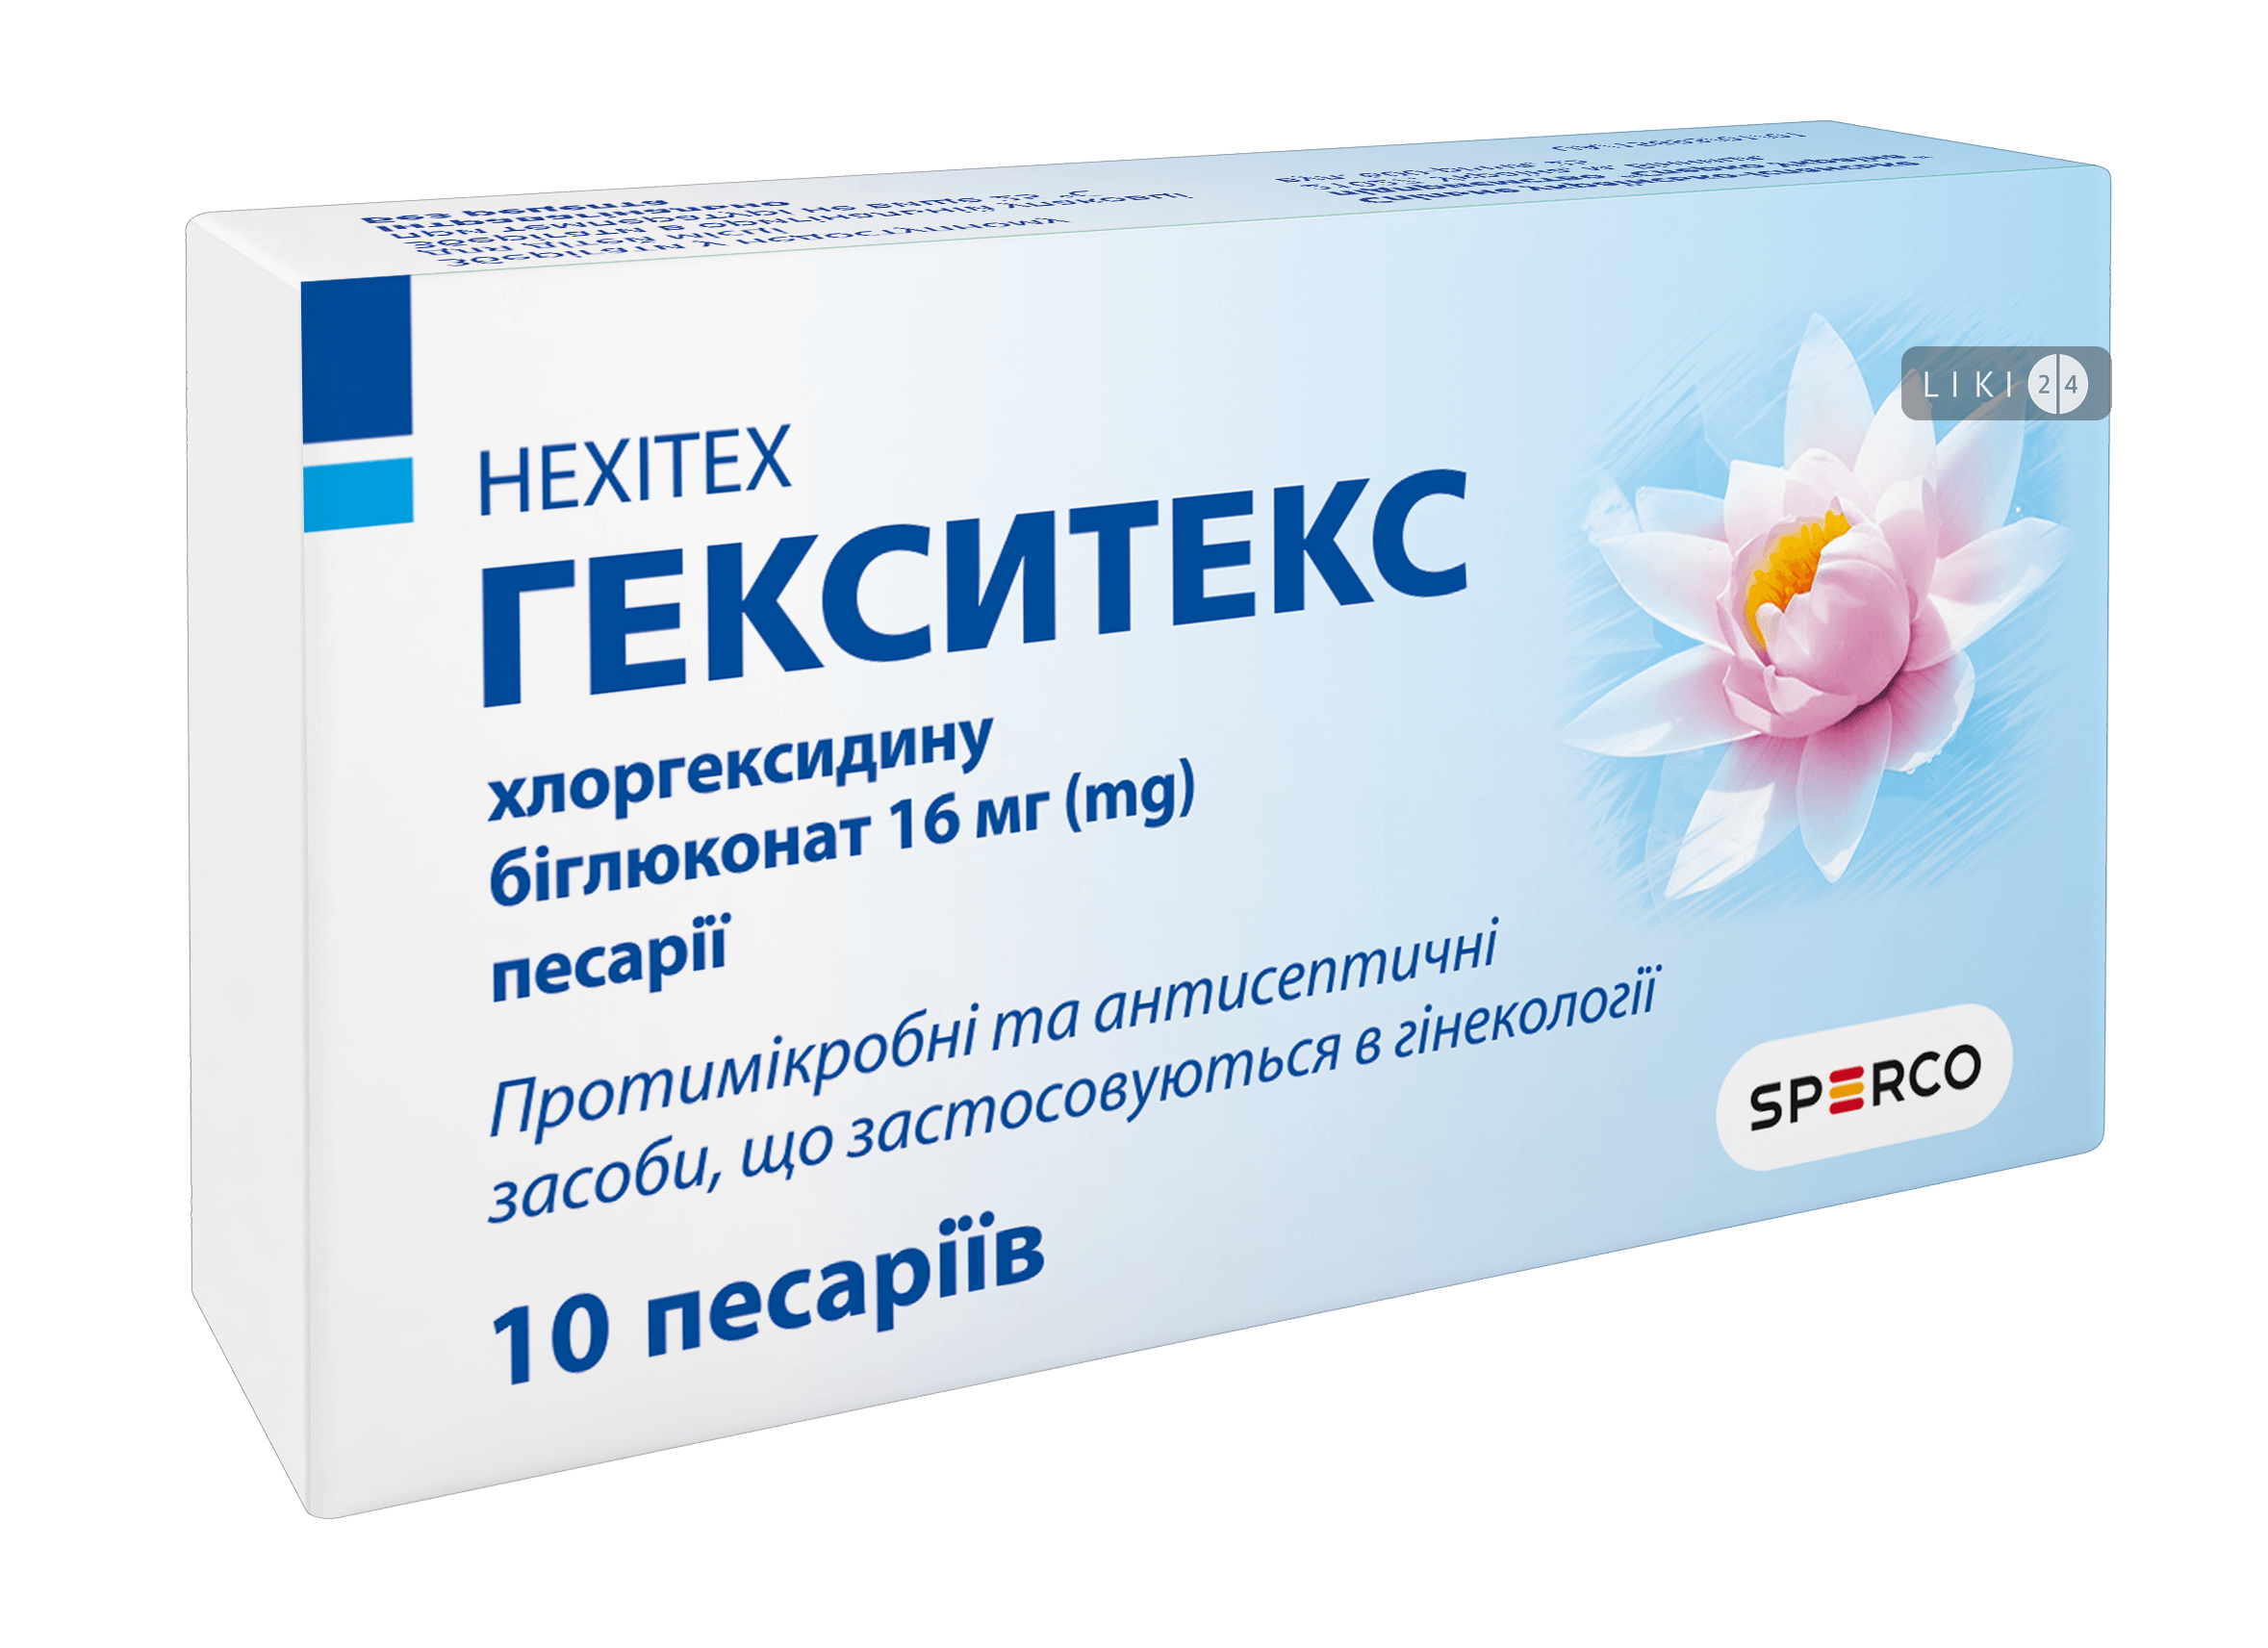 

Гекситекс песарії 16 мг стрип №10, песарії 16 мг стрип